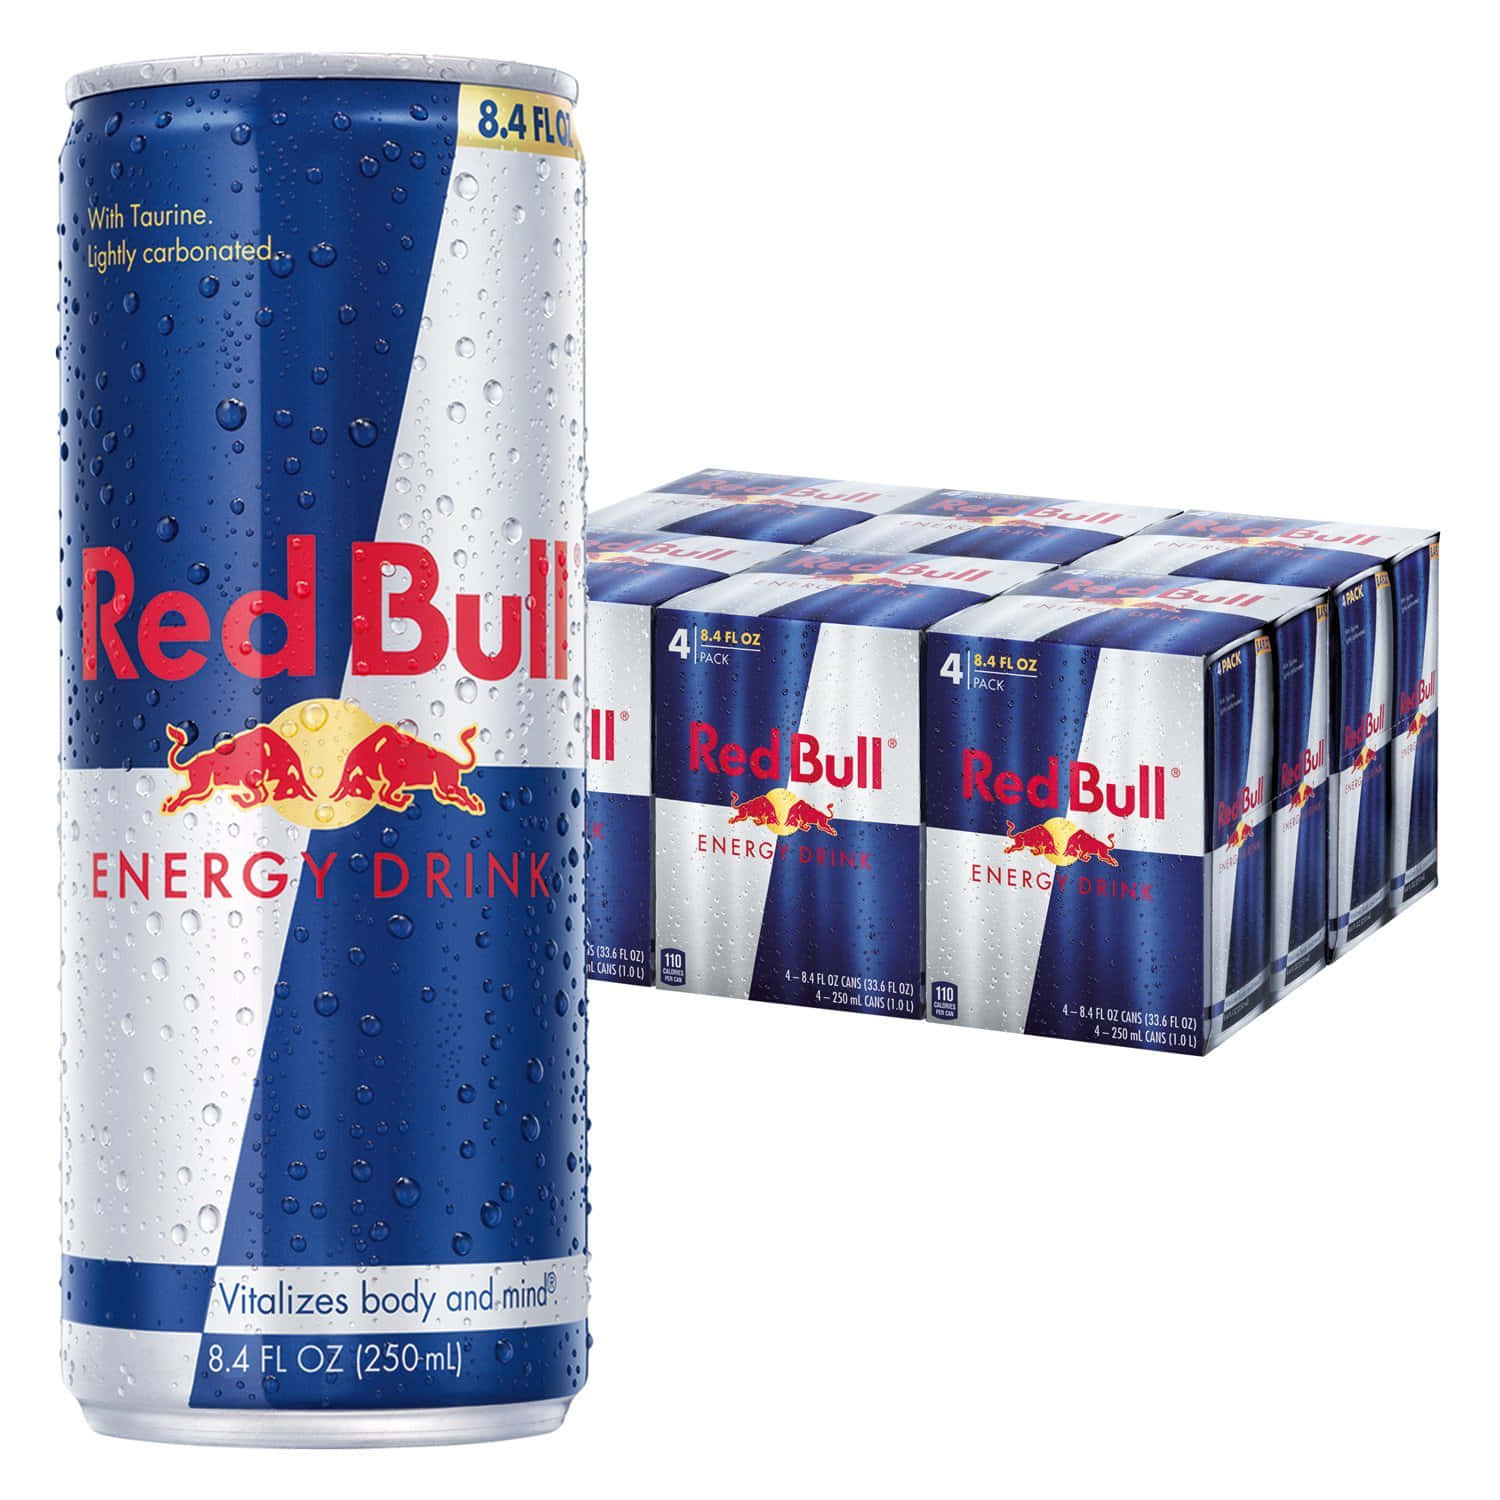 Belebedeine Leidenschaft Mit Red Bull